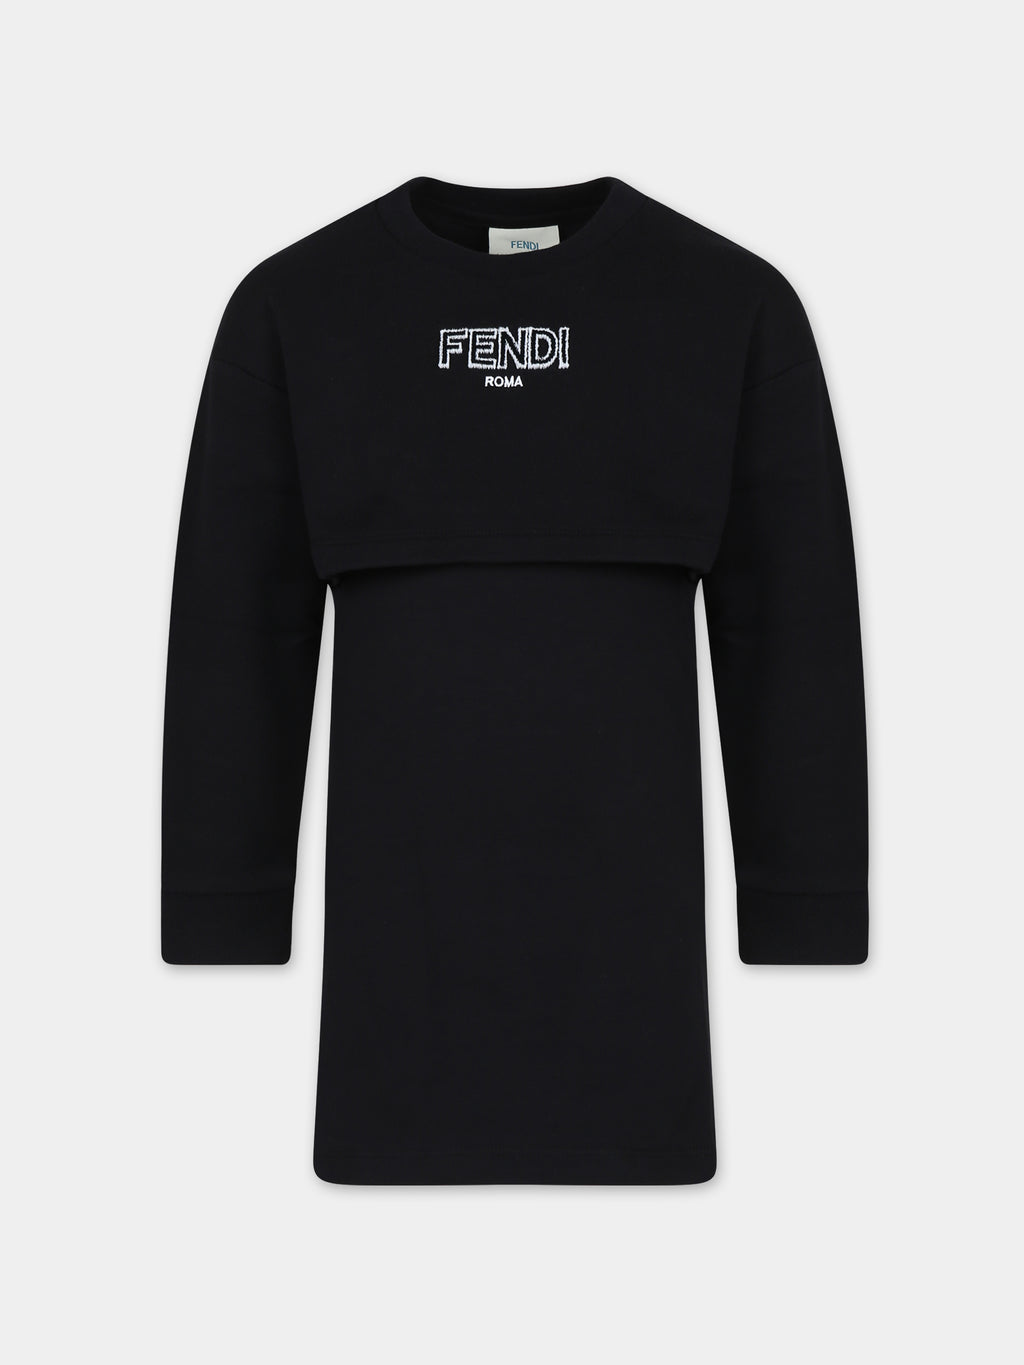 Black dress for girl with Fendi logo